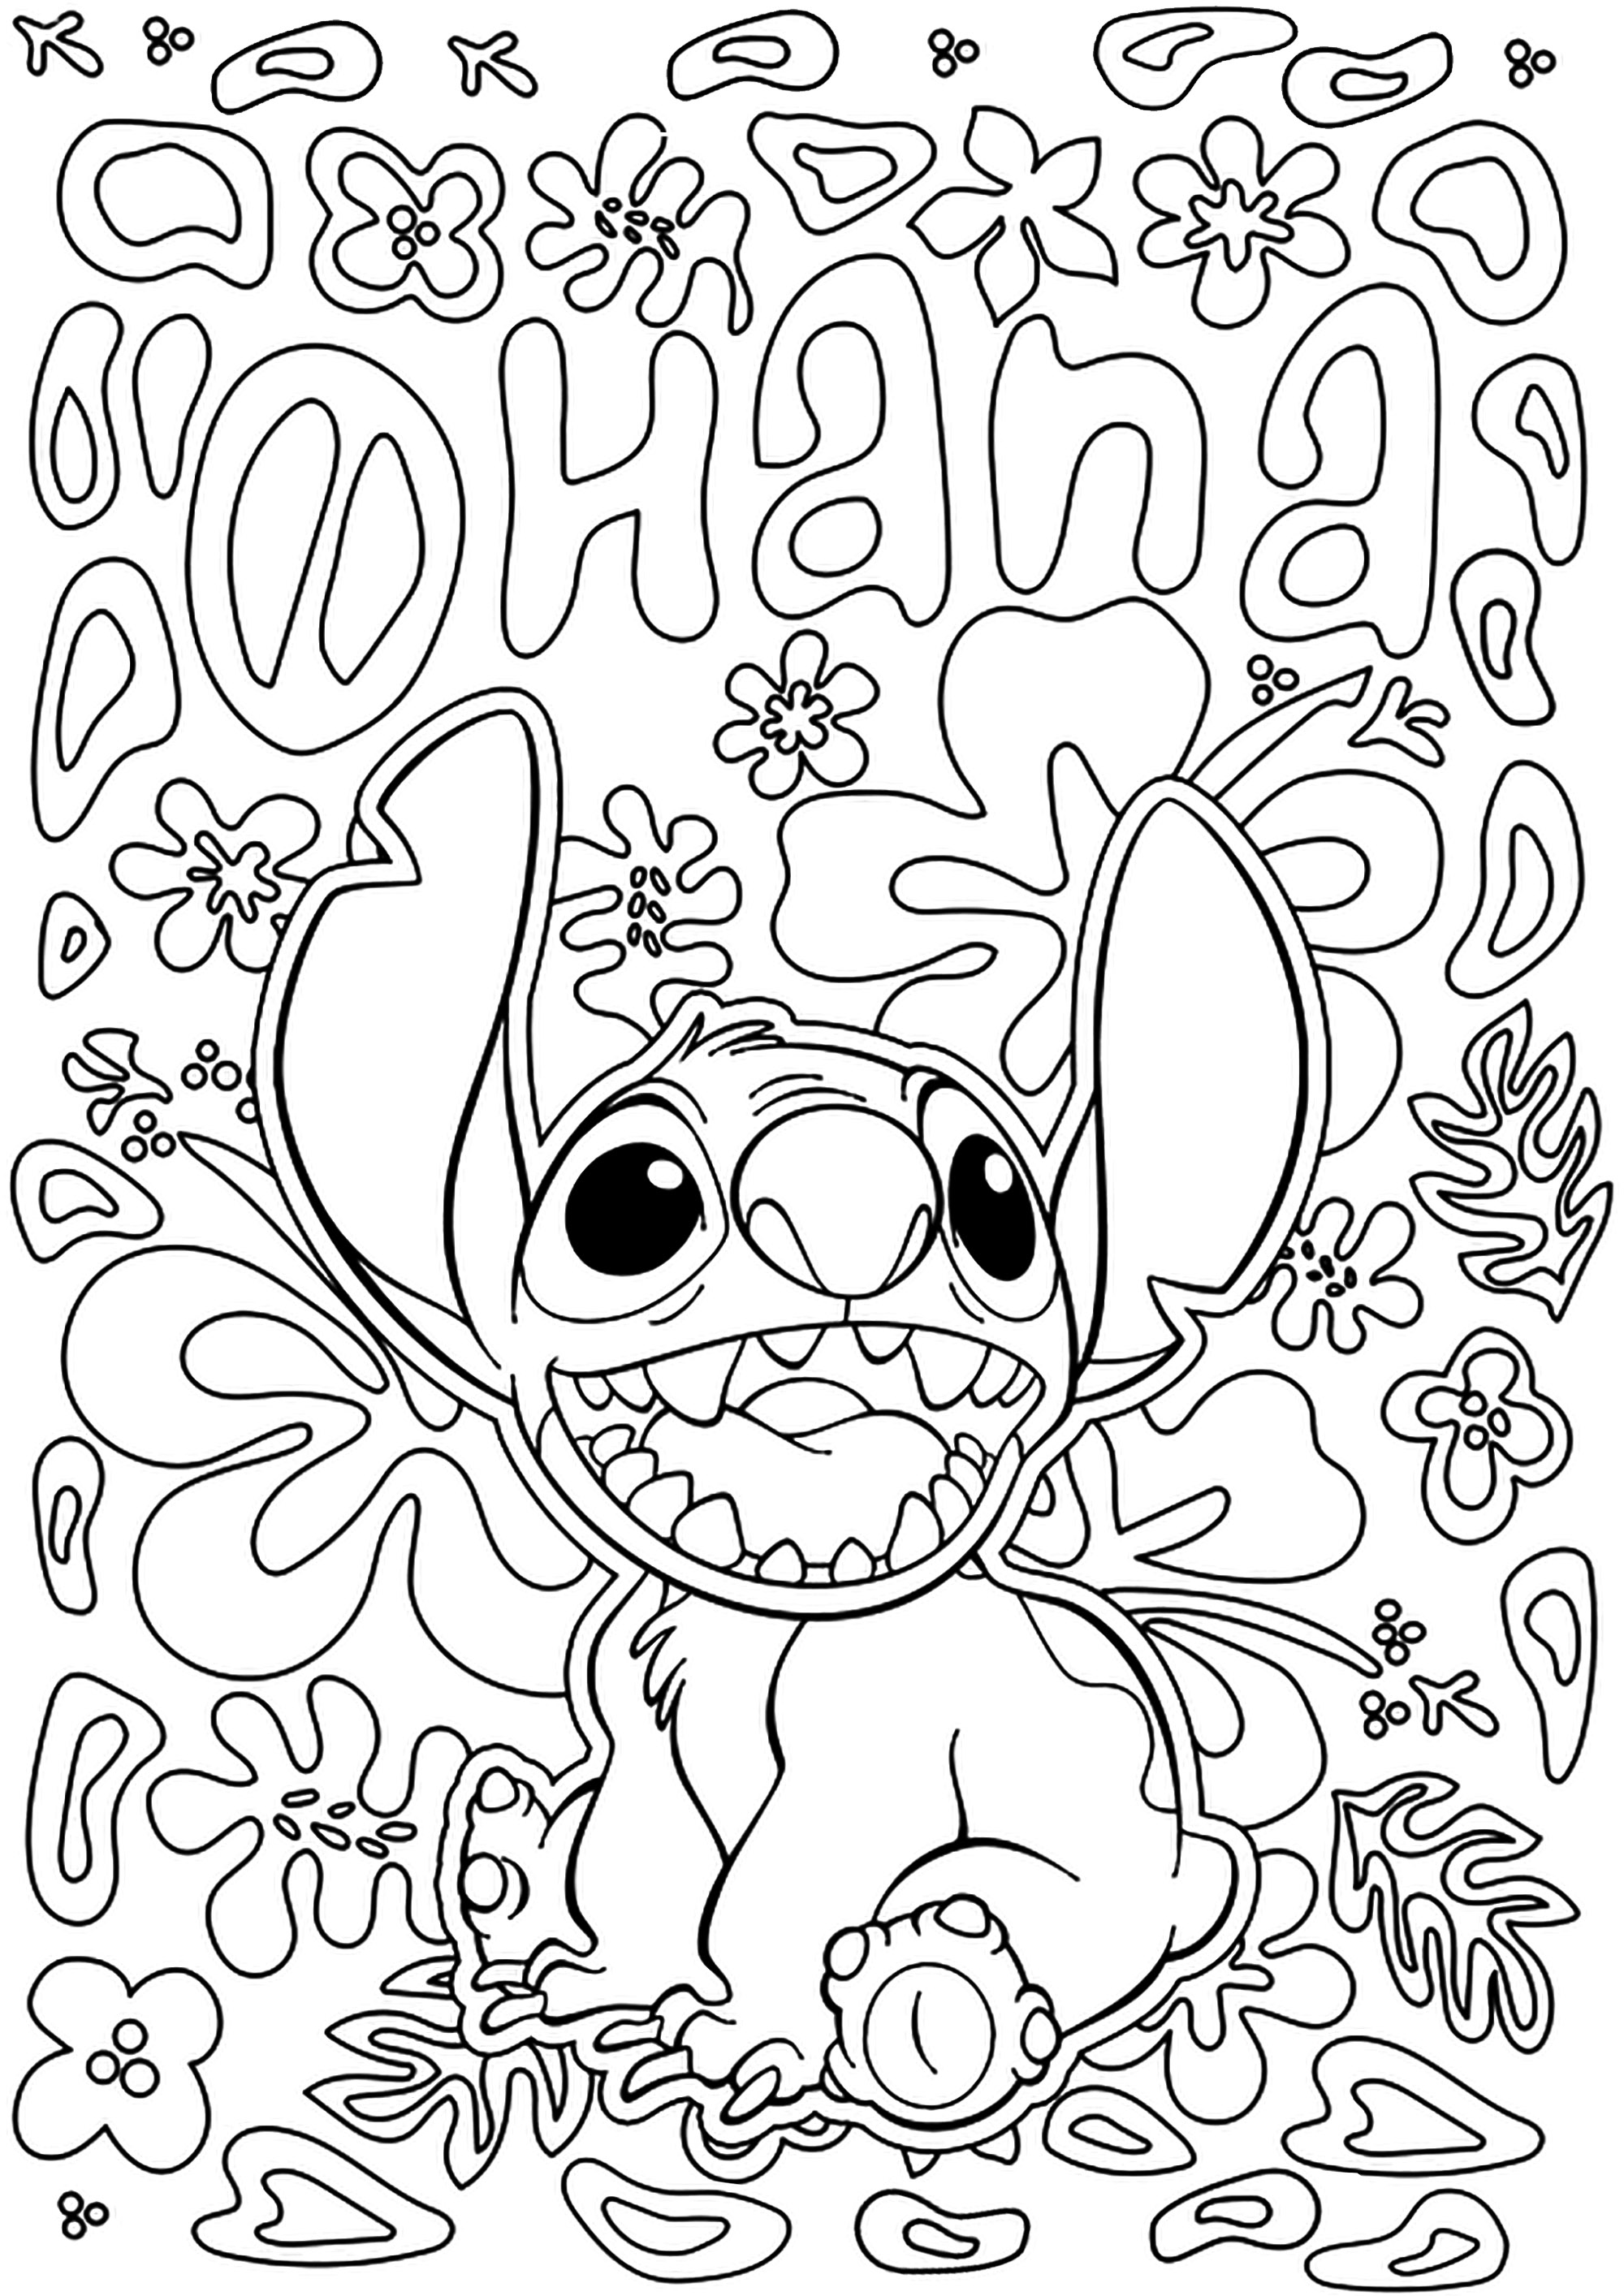 Lilo e Stitch para Colorir - Como Desenhar Bem Feito